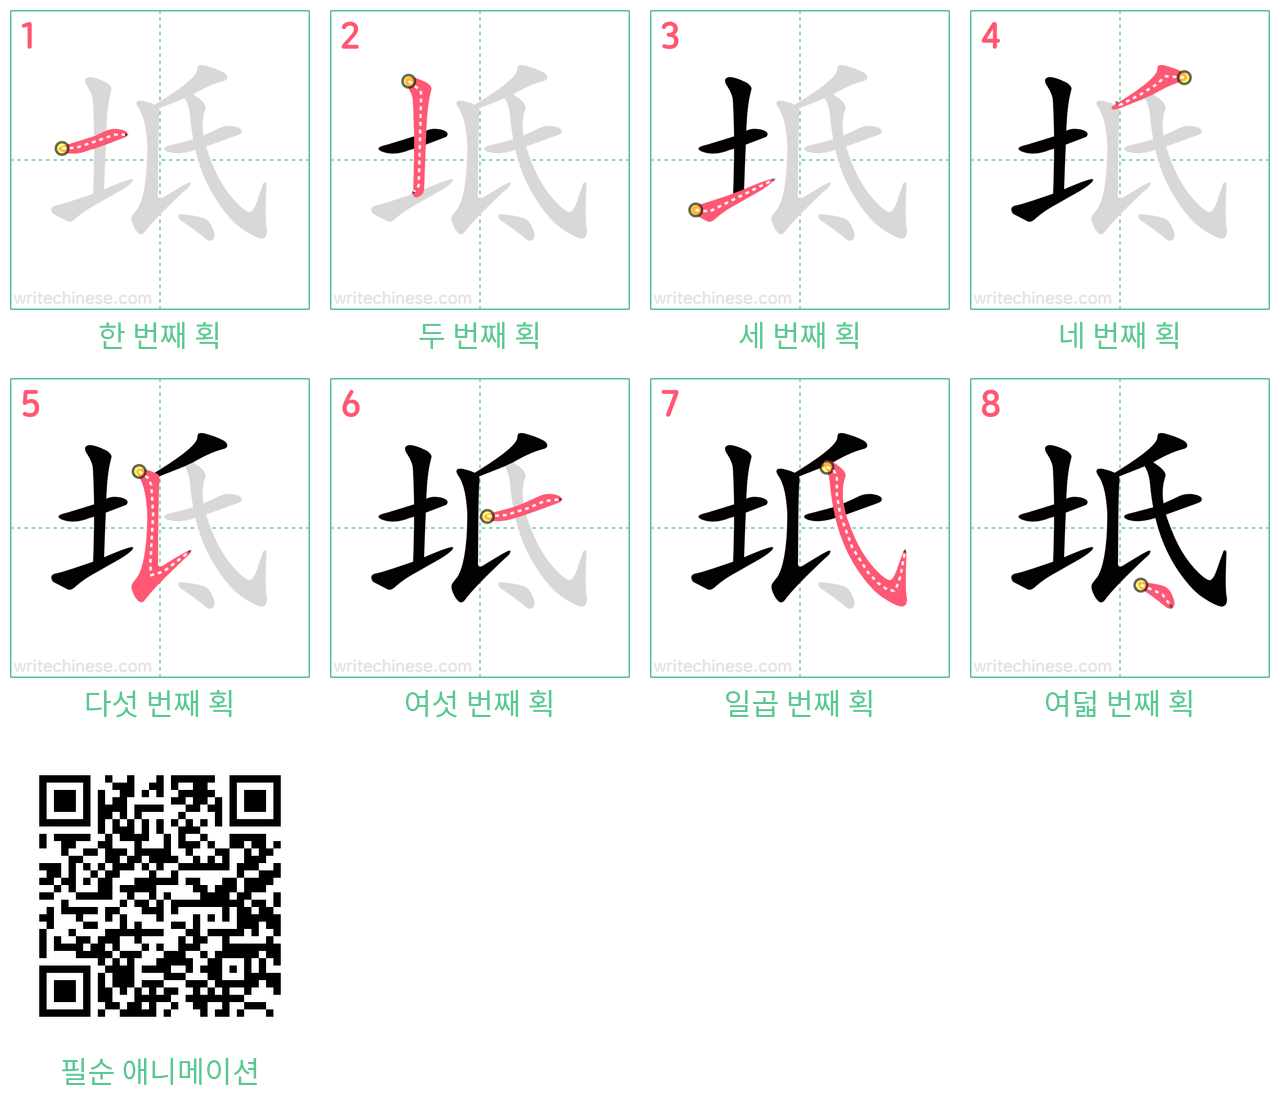 坻 step-by-step stroke order diagrams